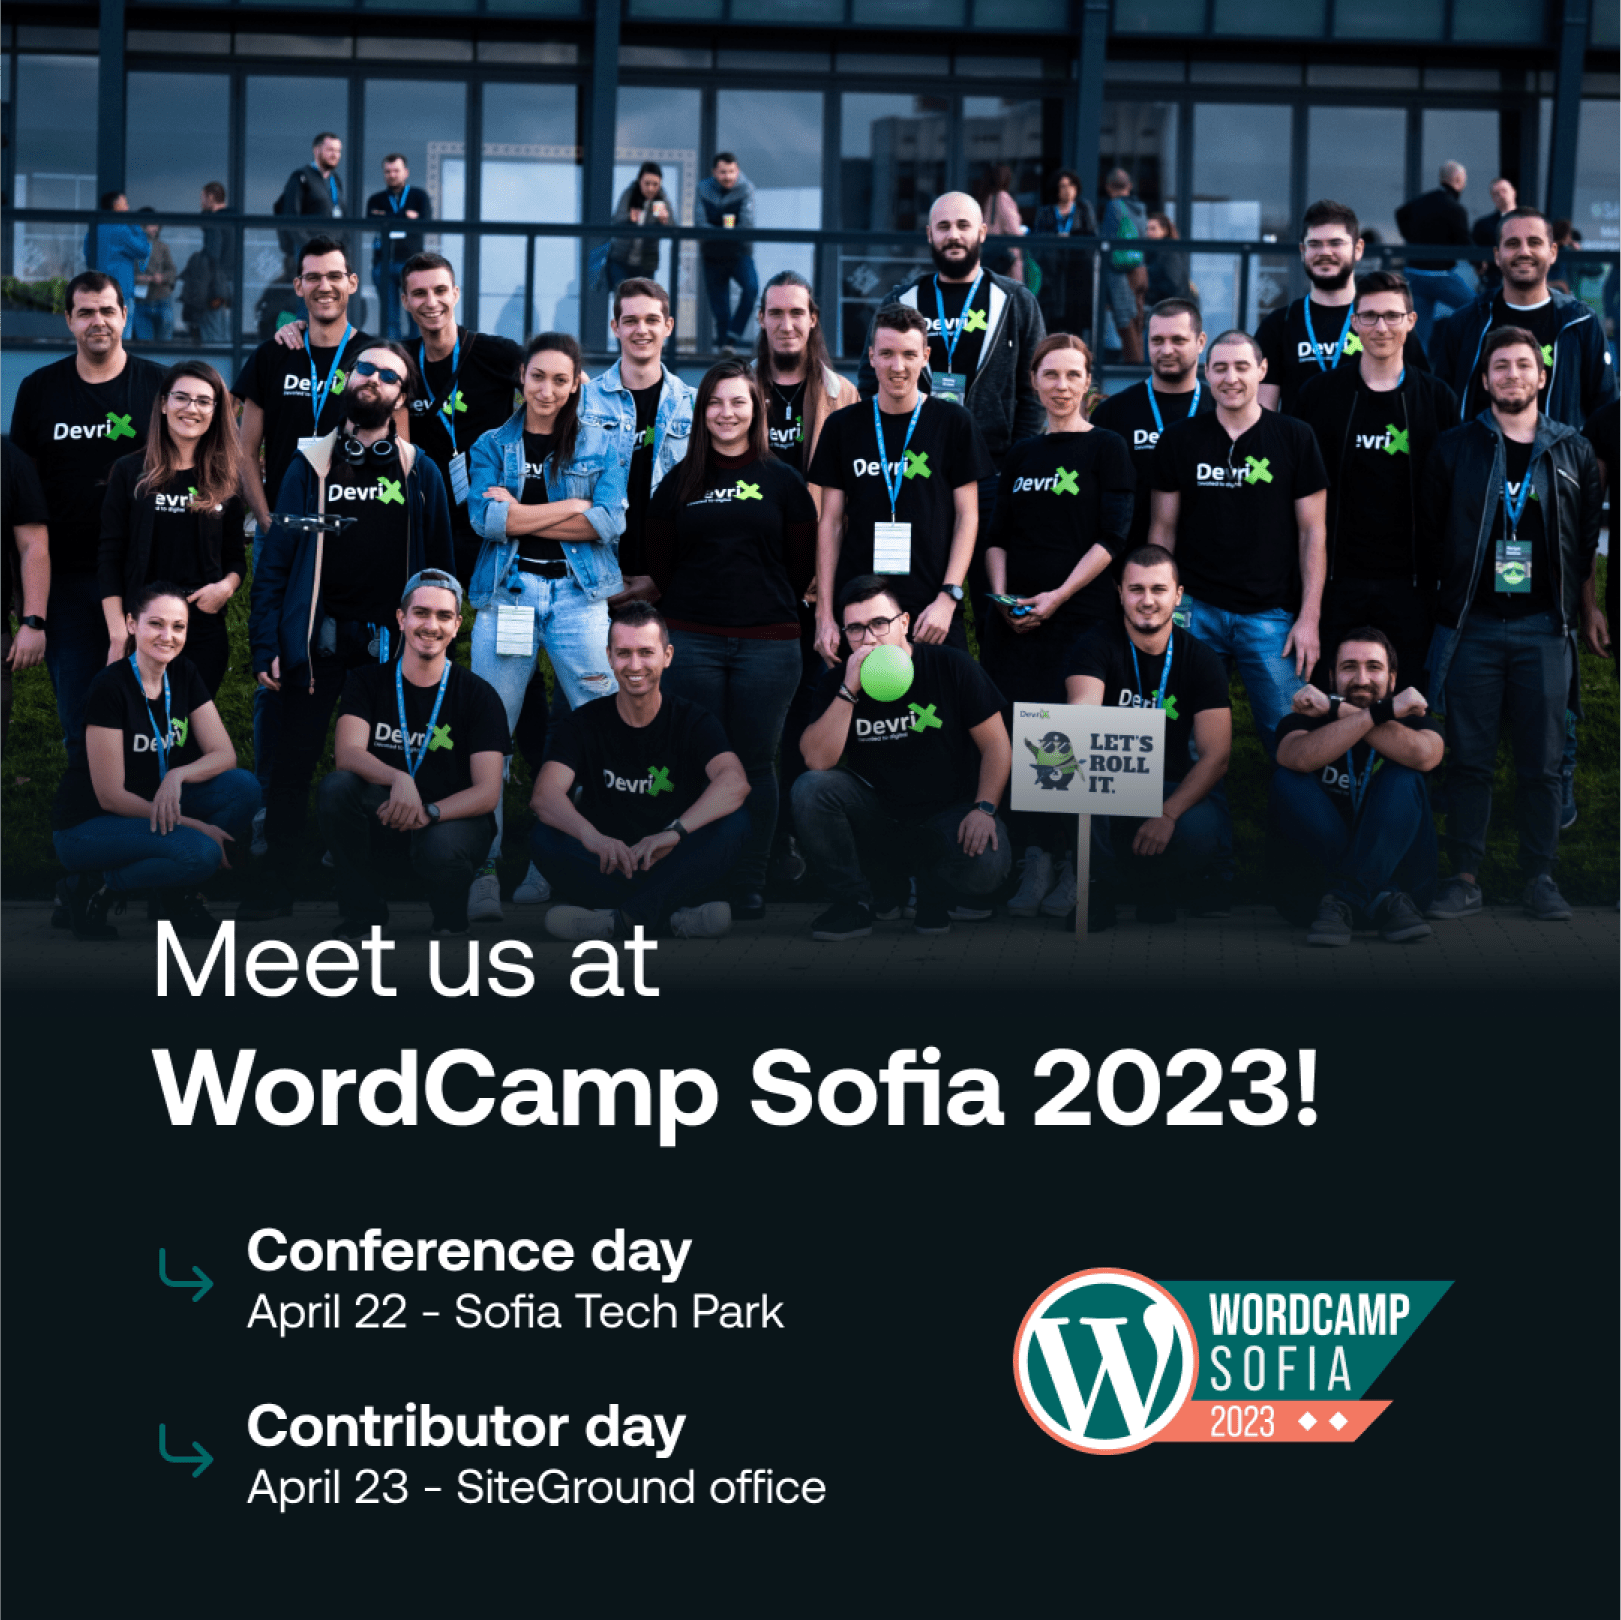 DevriX at WordCamp Sofia 2023